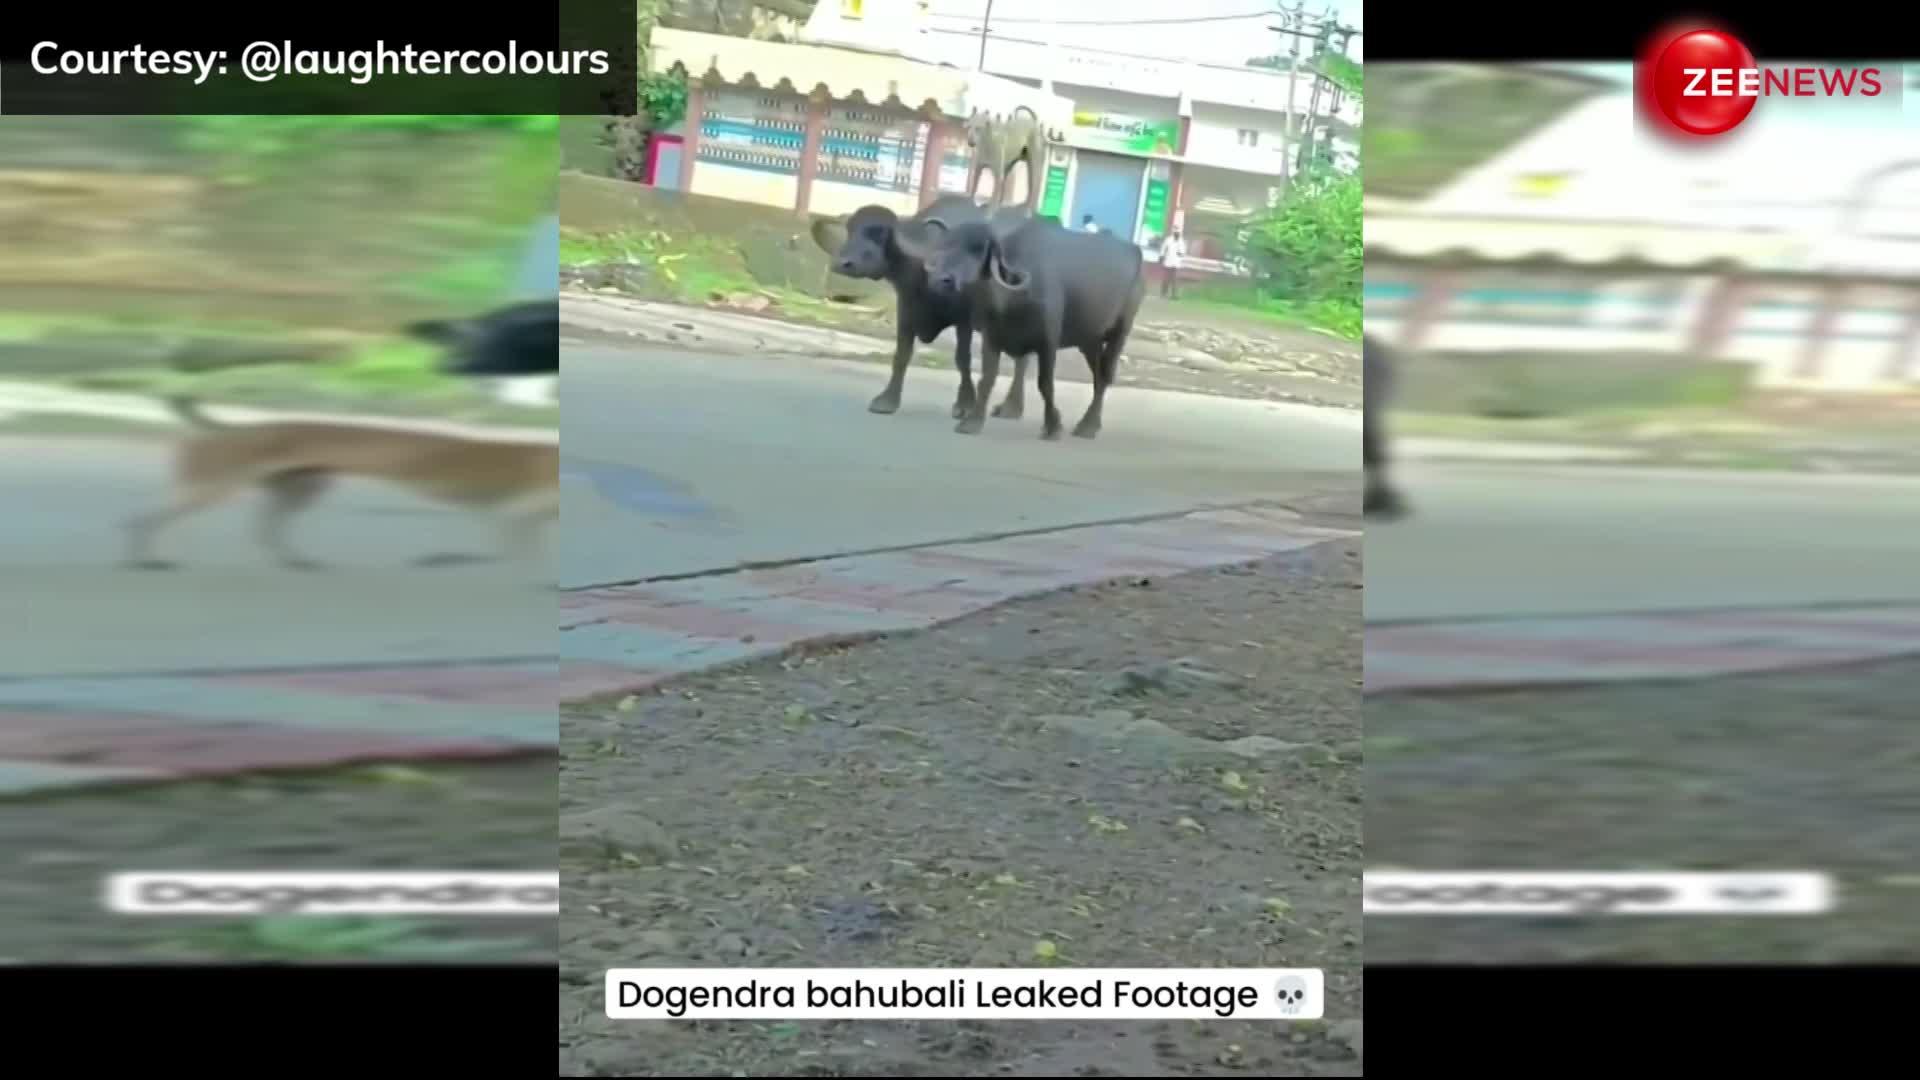 डॉगी का रॉयल अंदाज! दो भैंसो की सवारी करता दिखा कुत्ता, Video देख लोग बोले "डोगेन्द्र बाहुबली!"